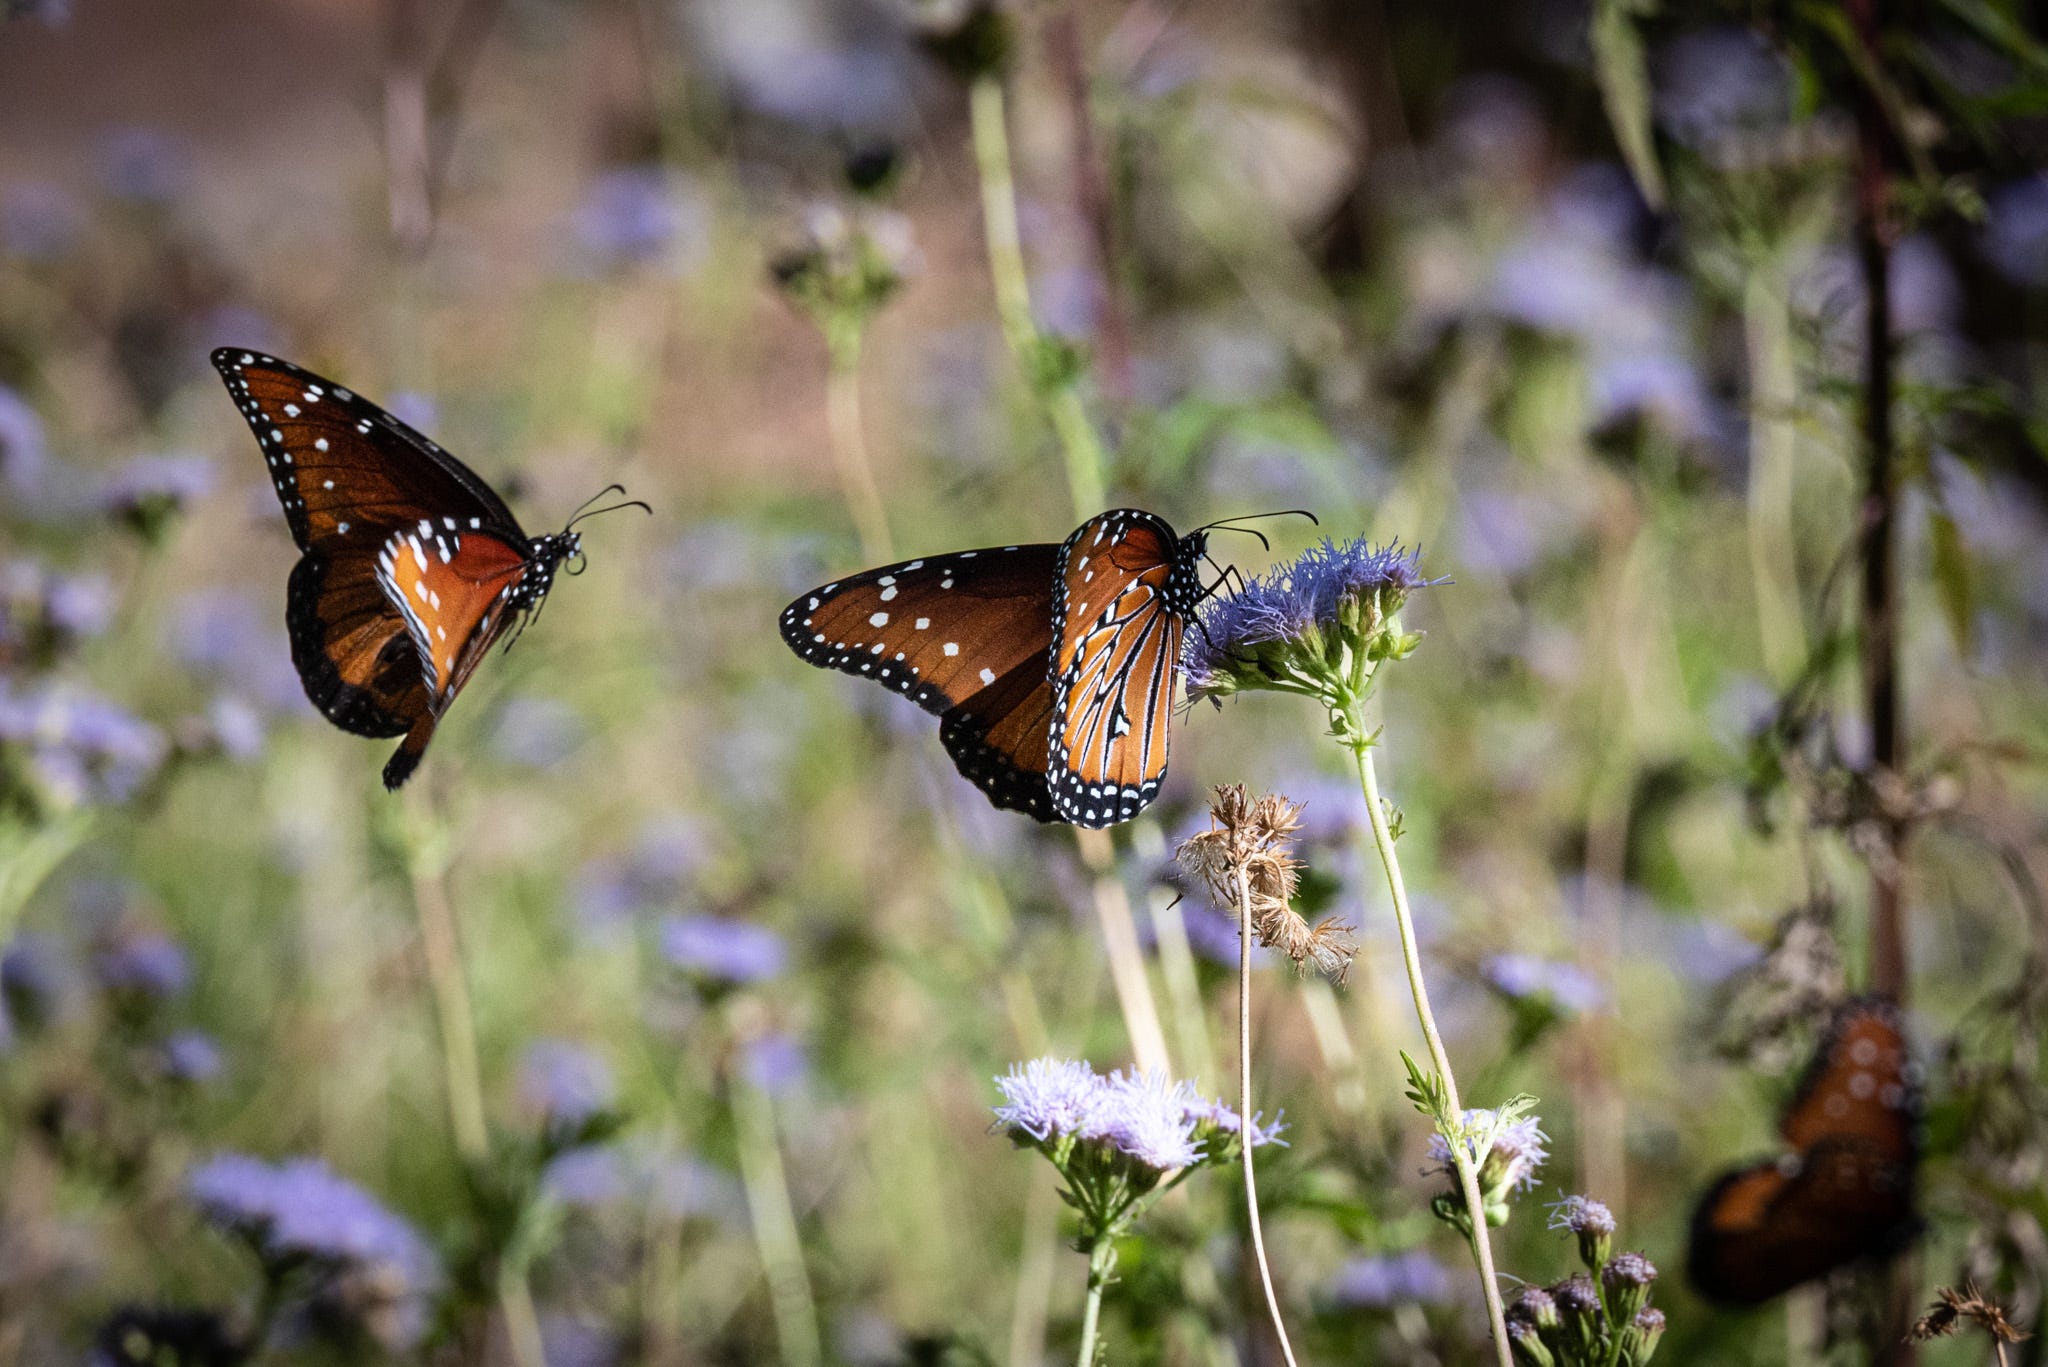 Two Monarch butterflies in a field of purple wildflowers